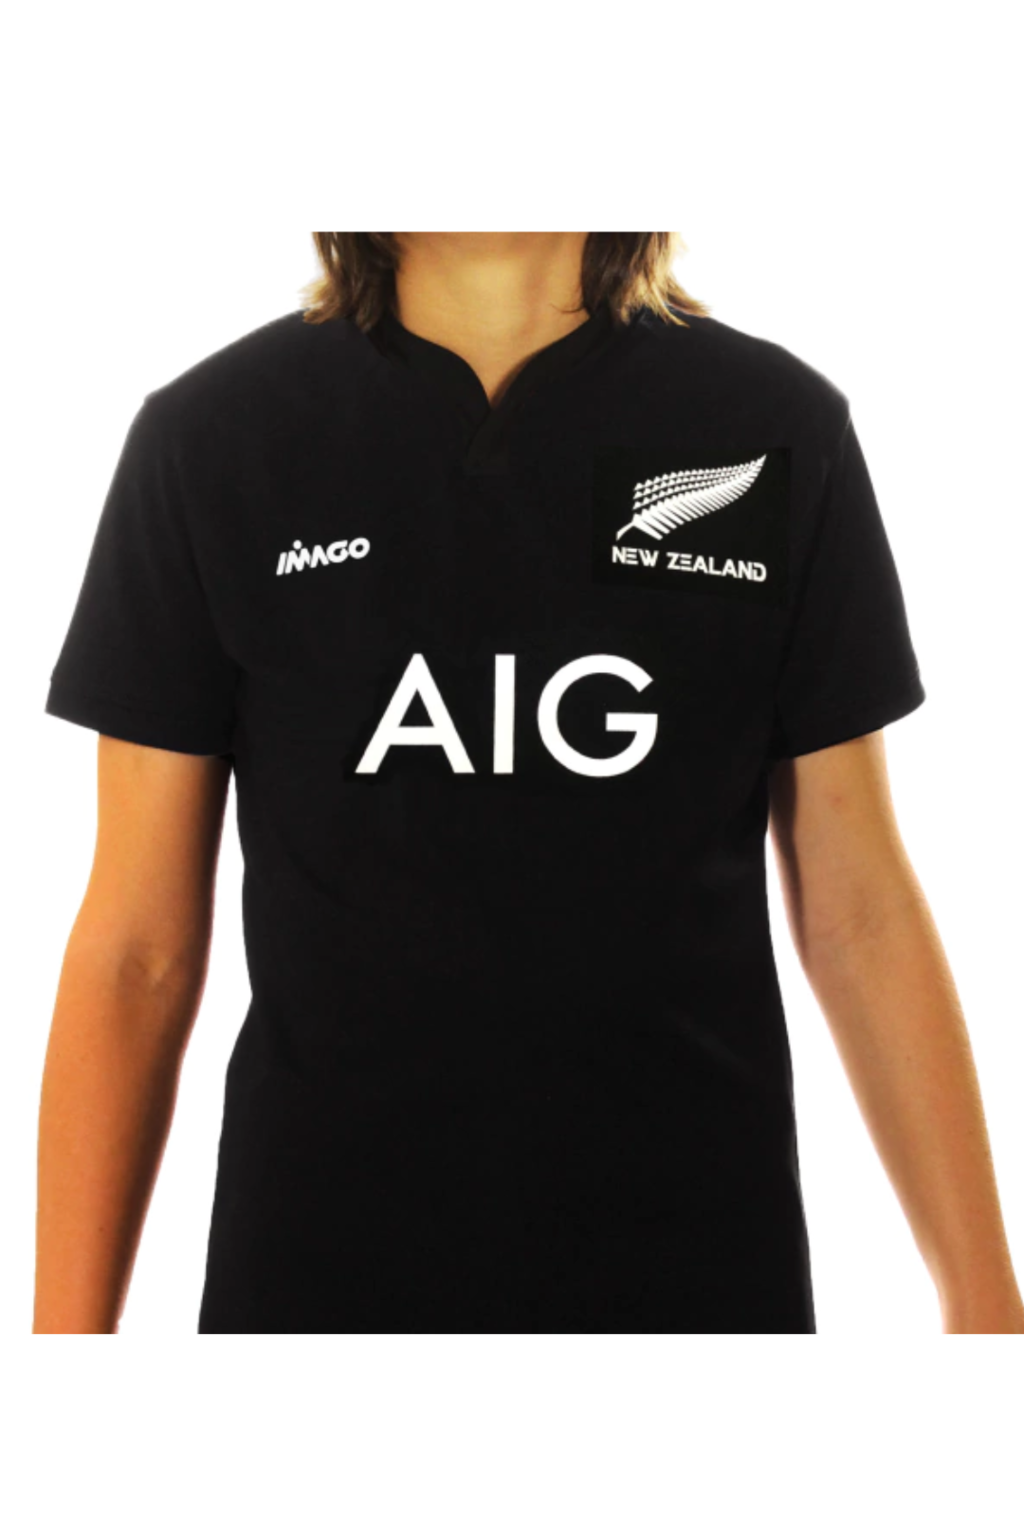 Camiseta Rugby MAORI - Cays Argentina -Tienda Online